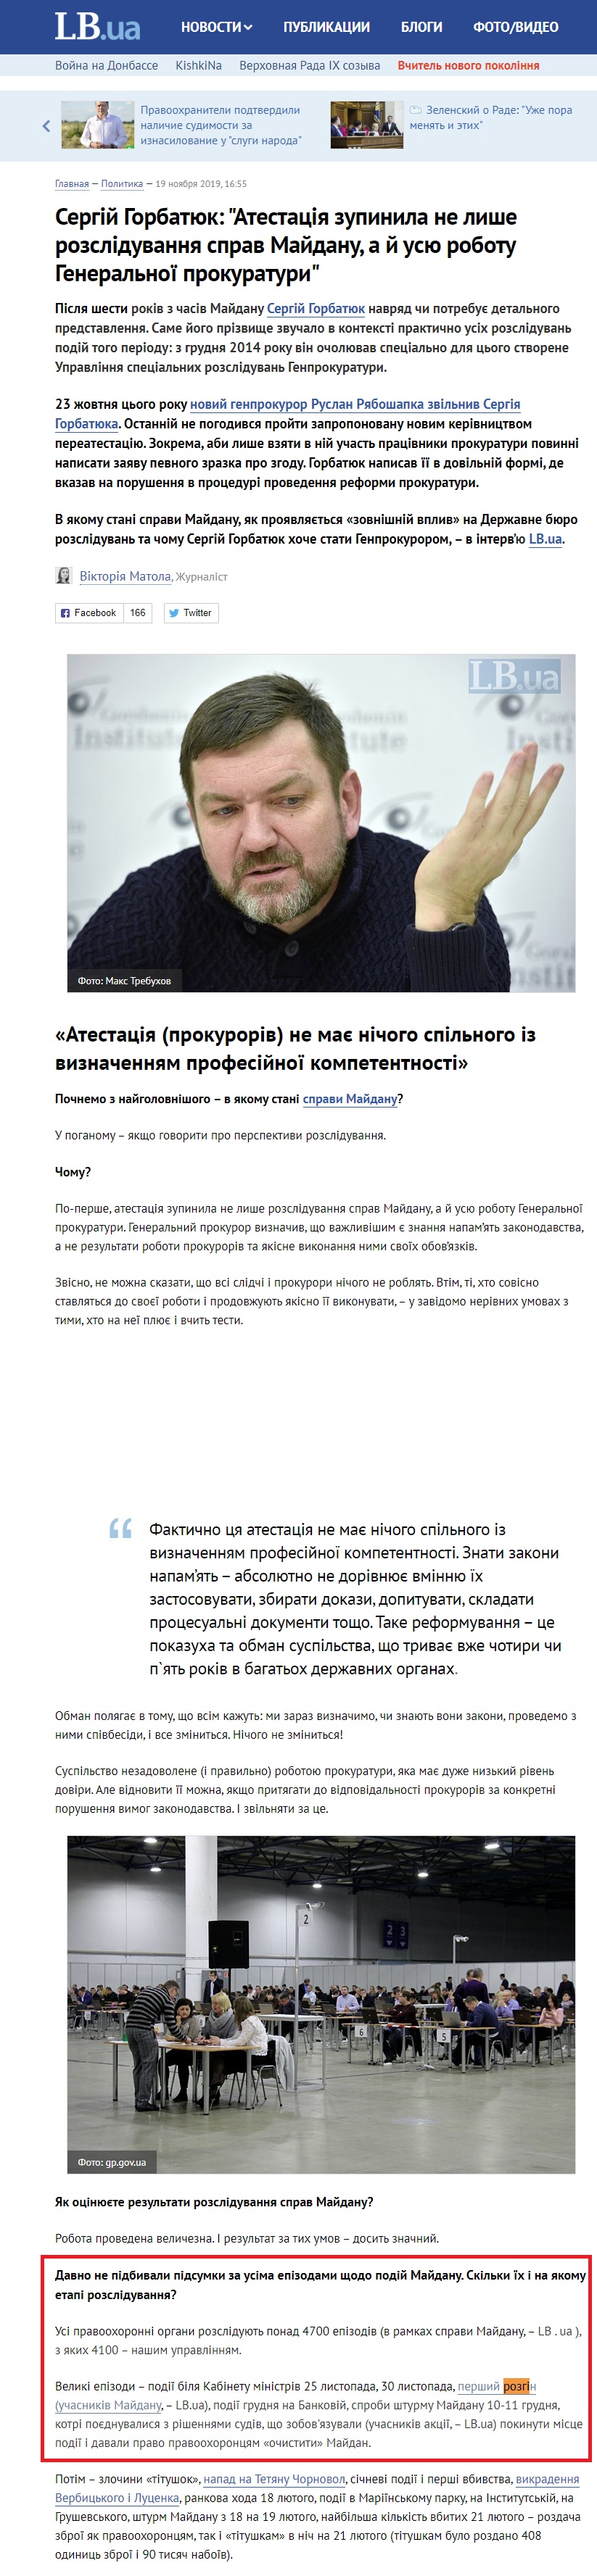 https://lb.ua/news/2019/11/19/442659_sergiy_gorbatyuk_atestatsiya.html